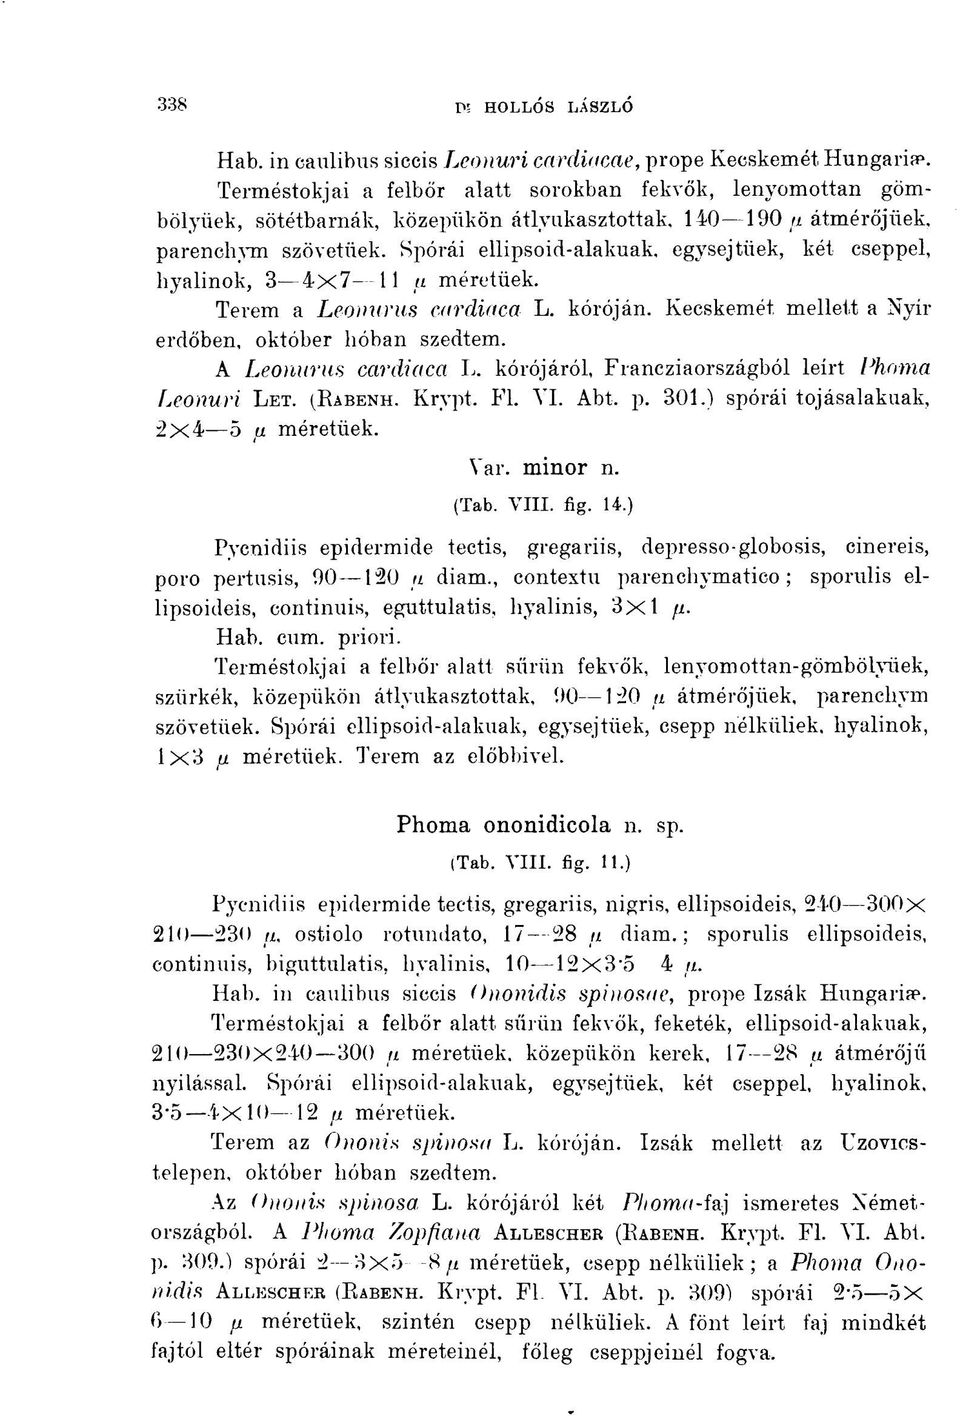 Kecskemét mellett a Nyír erdőben, október hóban szedtem. A Leonurus ccirdiaca L. kórójáról, Francziaországból leírt Phoma Leoauri LET. (RABENH. Krypt. Fl. VI. Abt. p. 301.